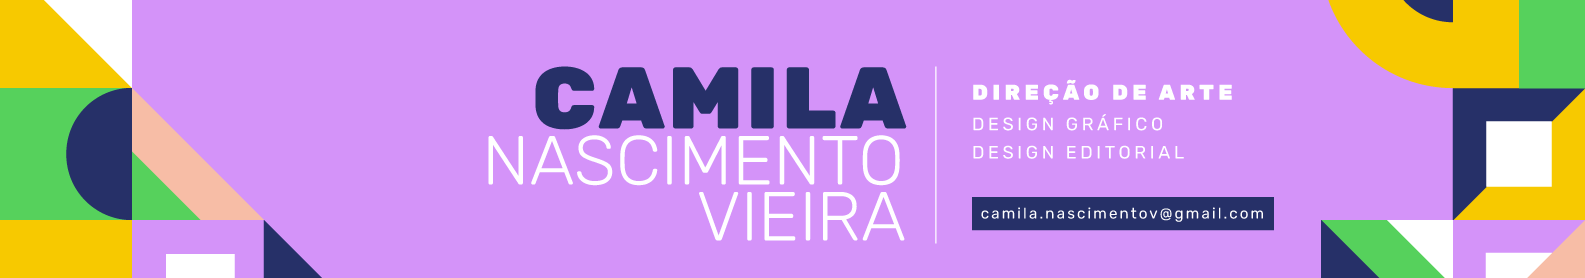 Camila Nascimento's profile banner